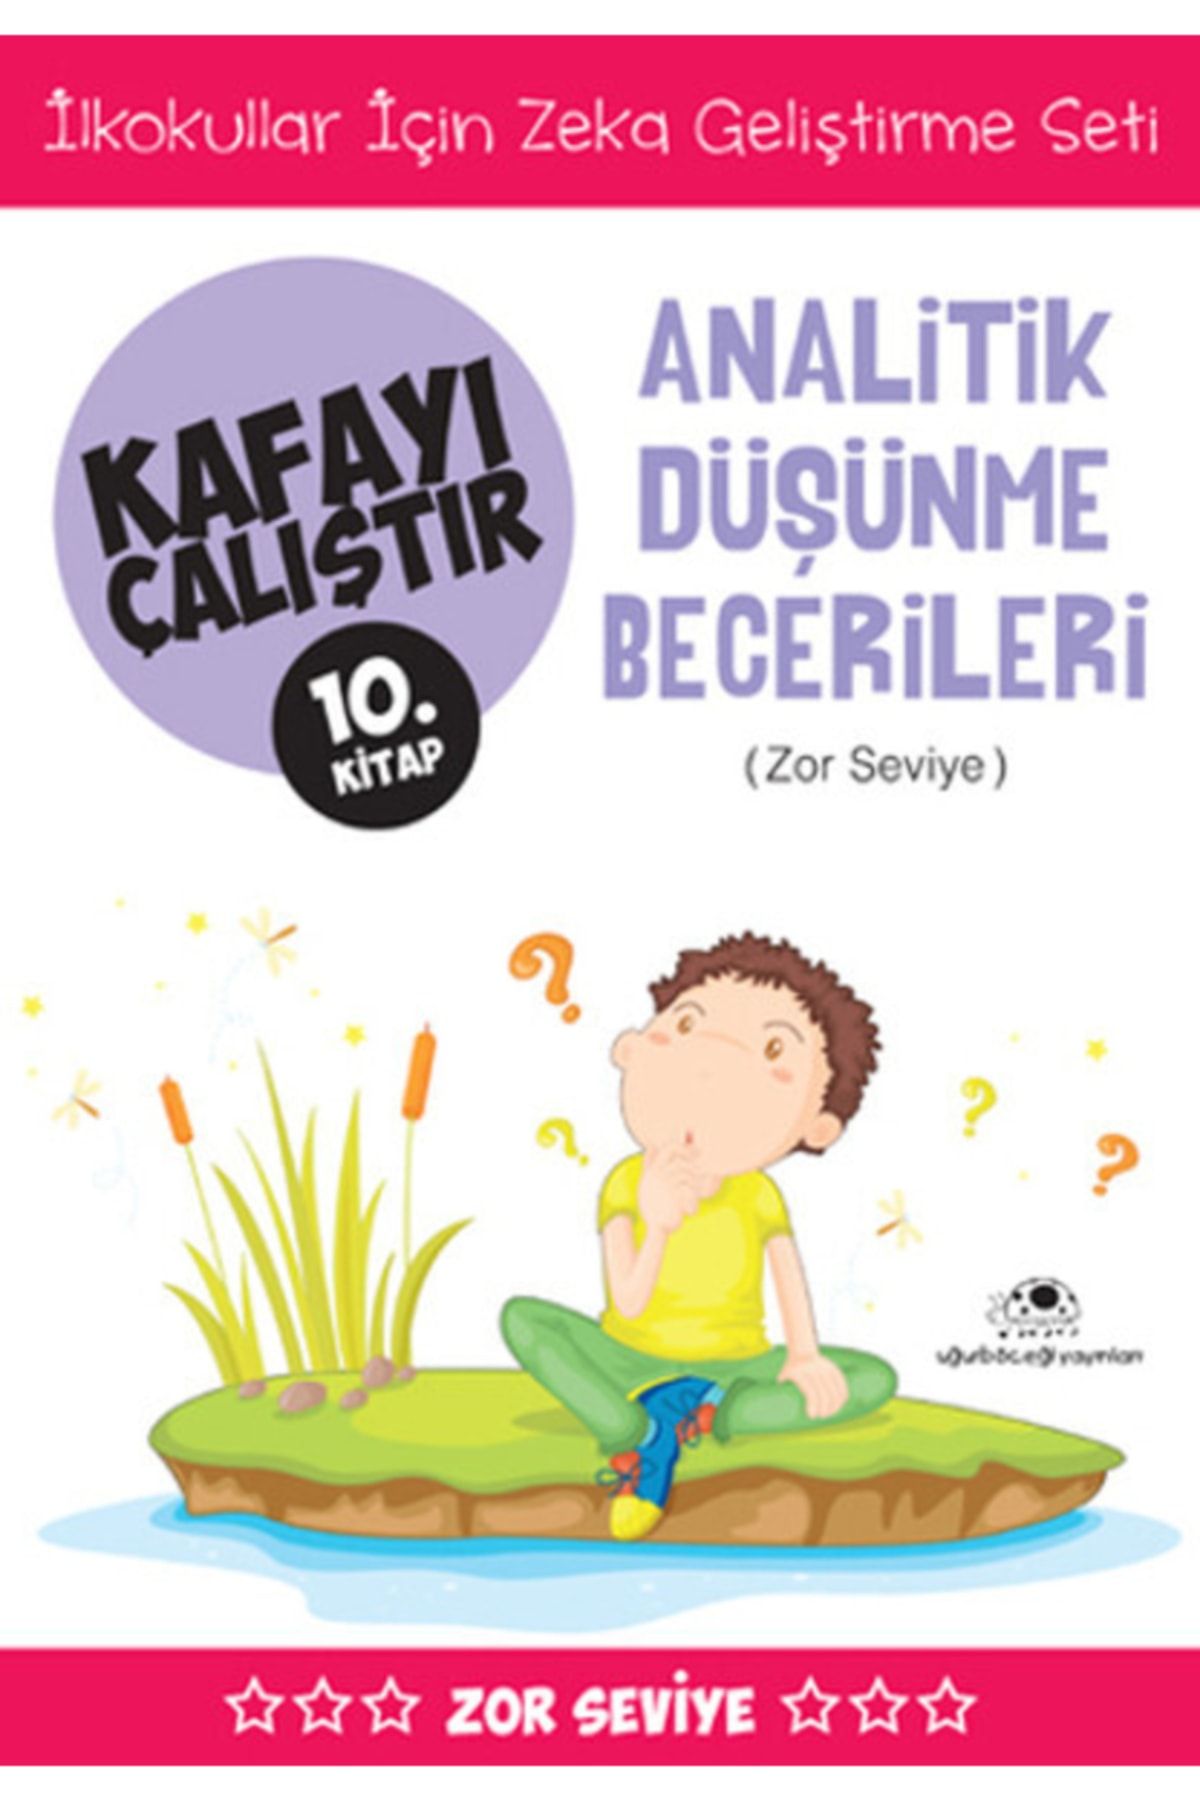 Uğurböceği Yayınları Analitik Düşünme Becerileri Kafayı Çalıştır 10. Kitap Zor Seviye